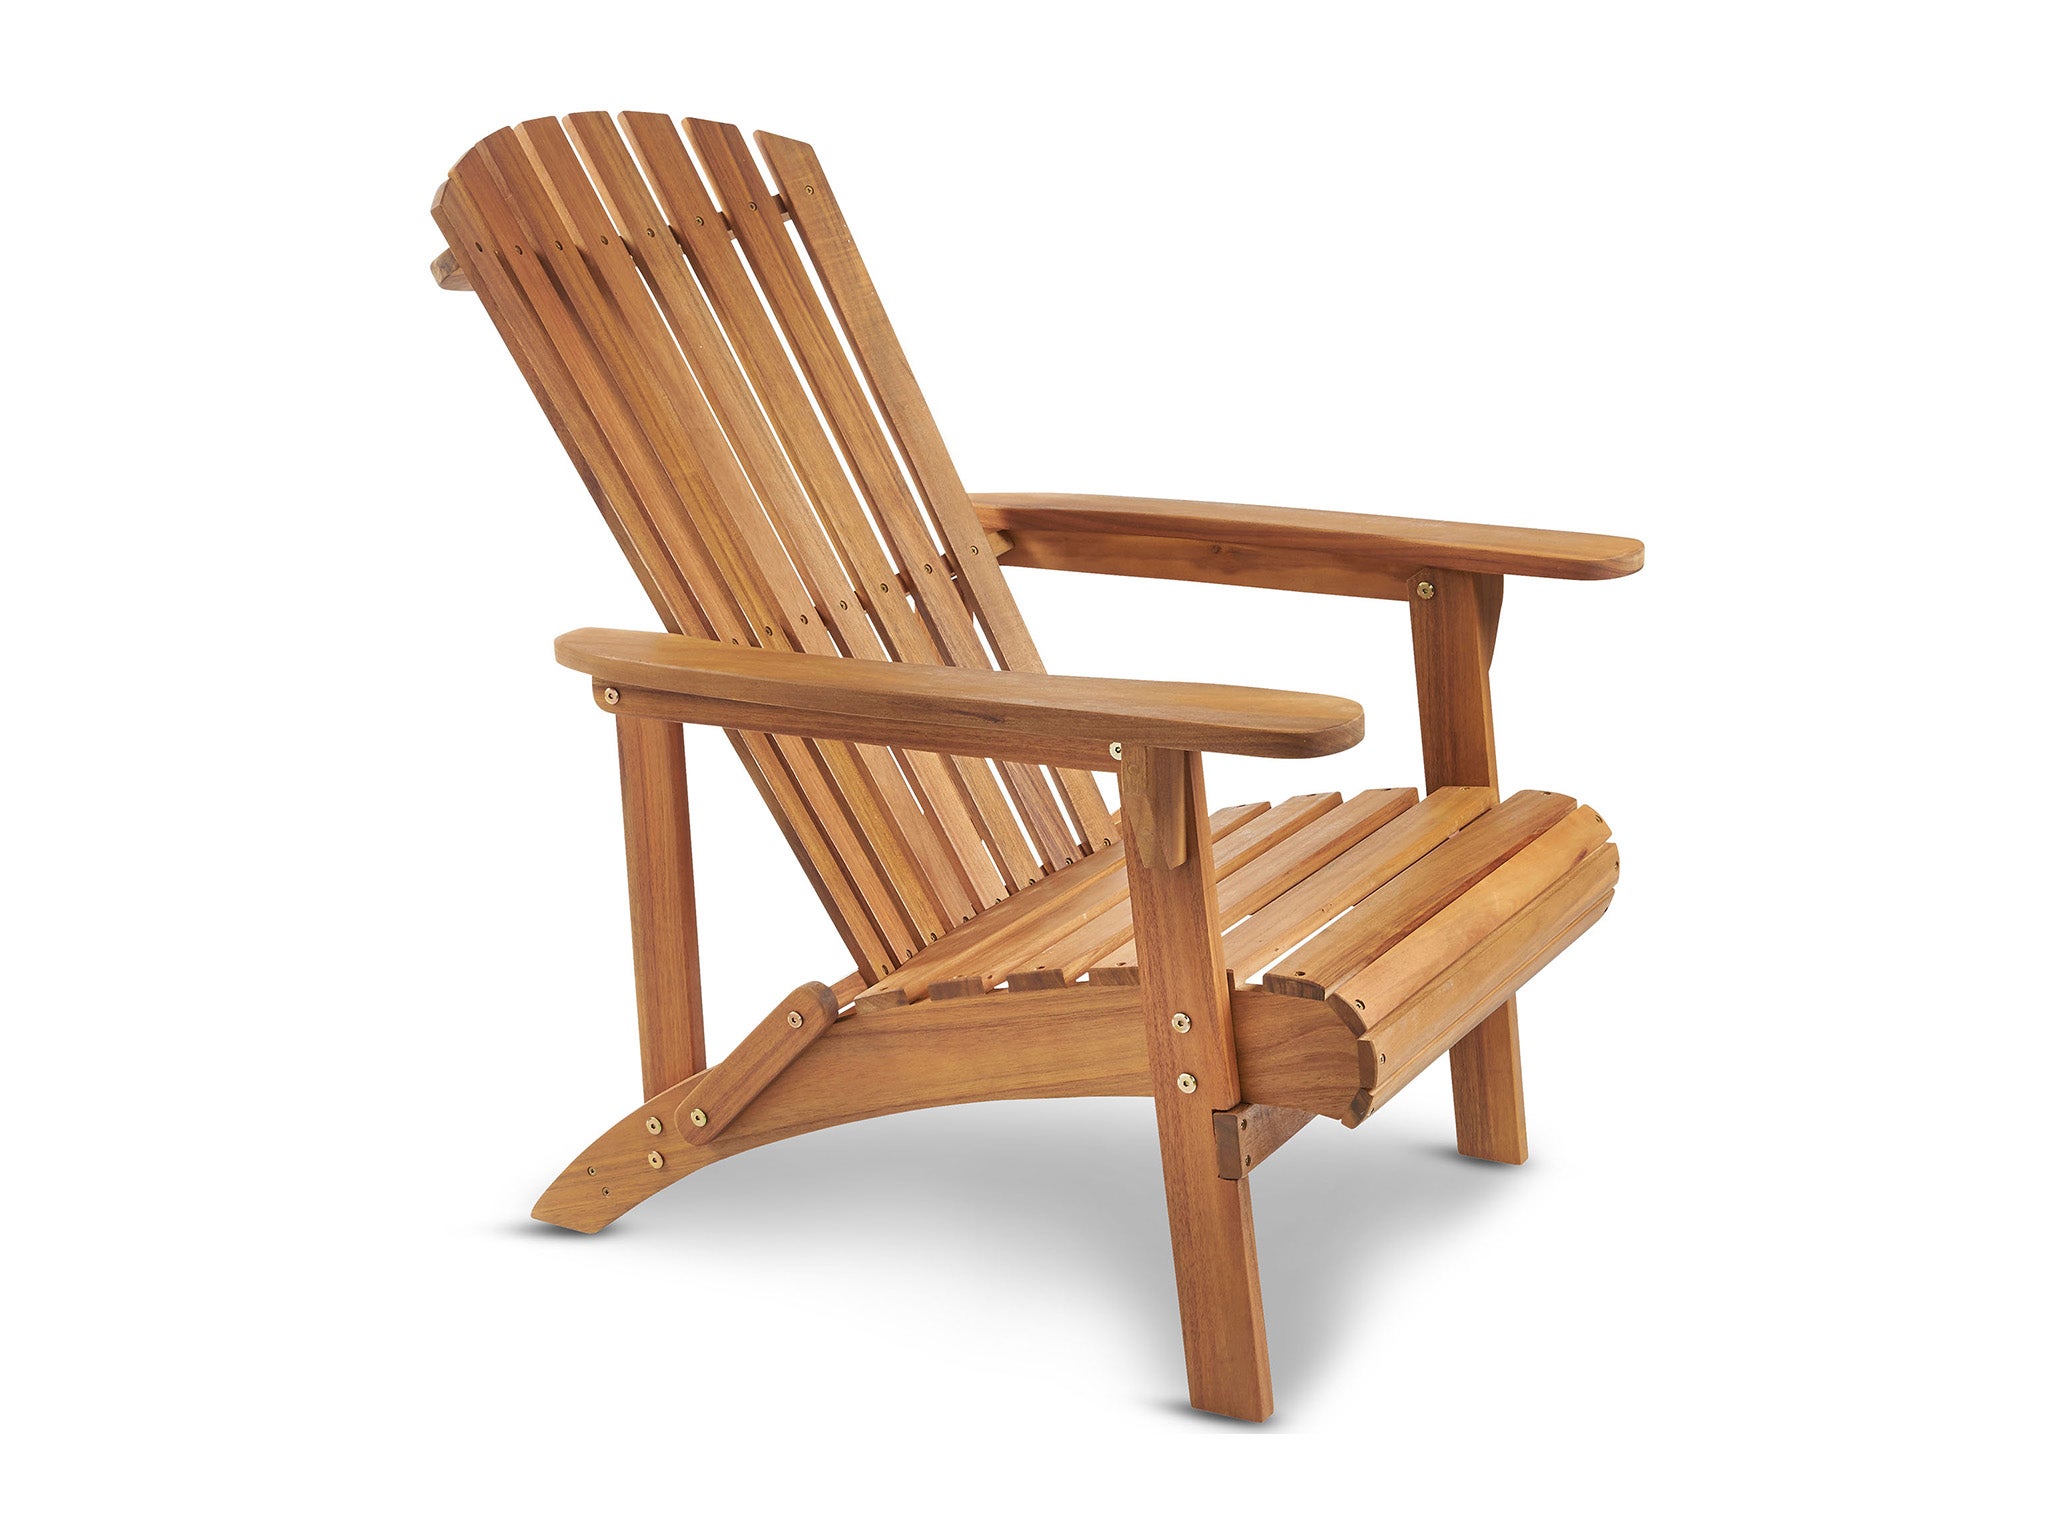 Von Haus wooden Adirondack chair